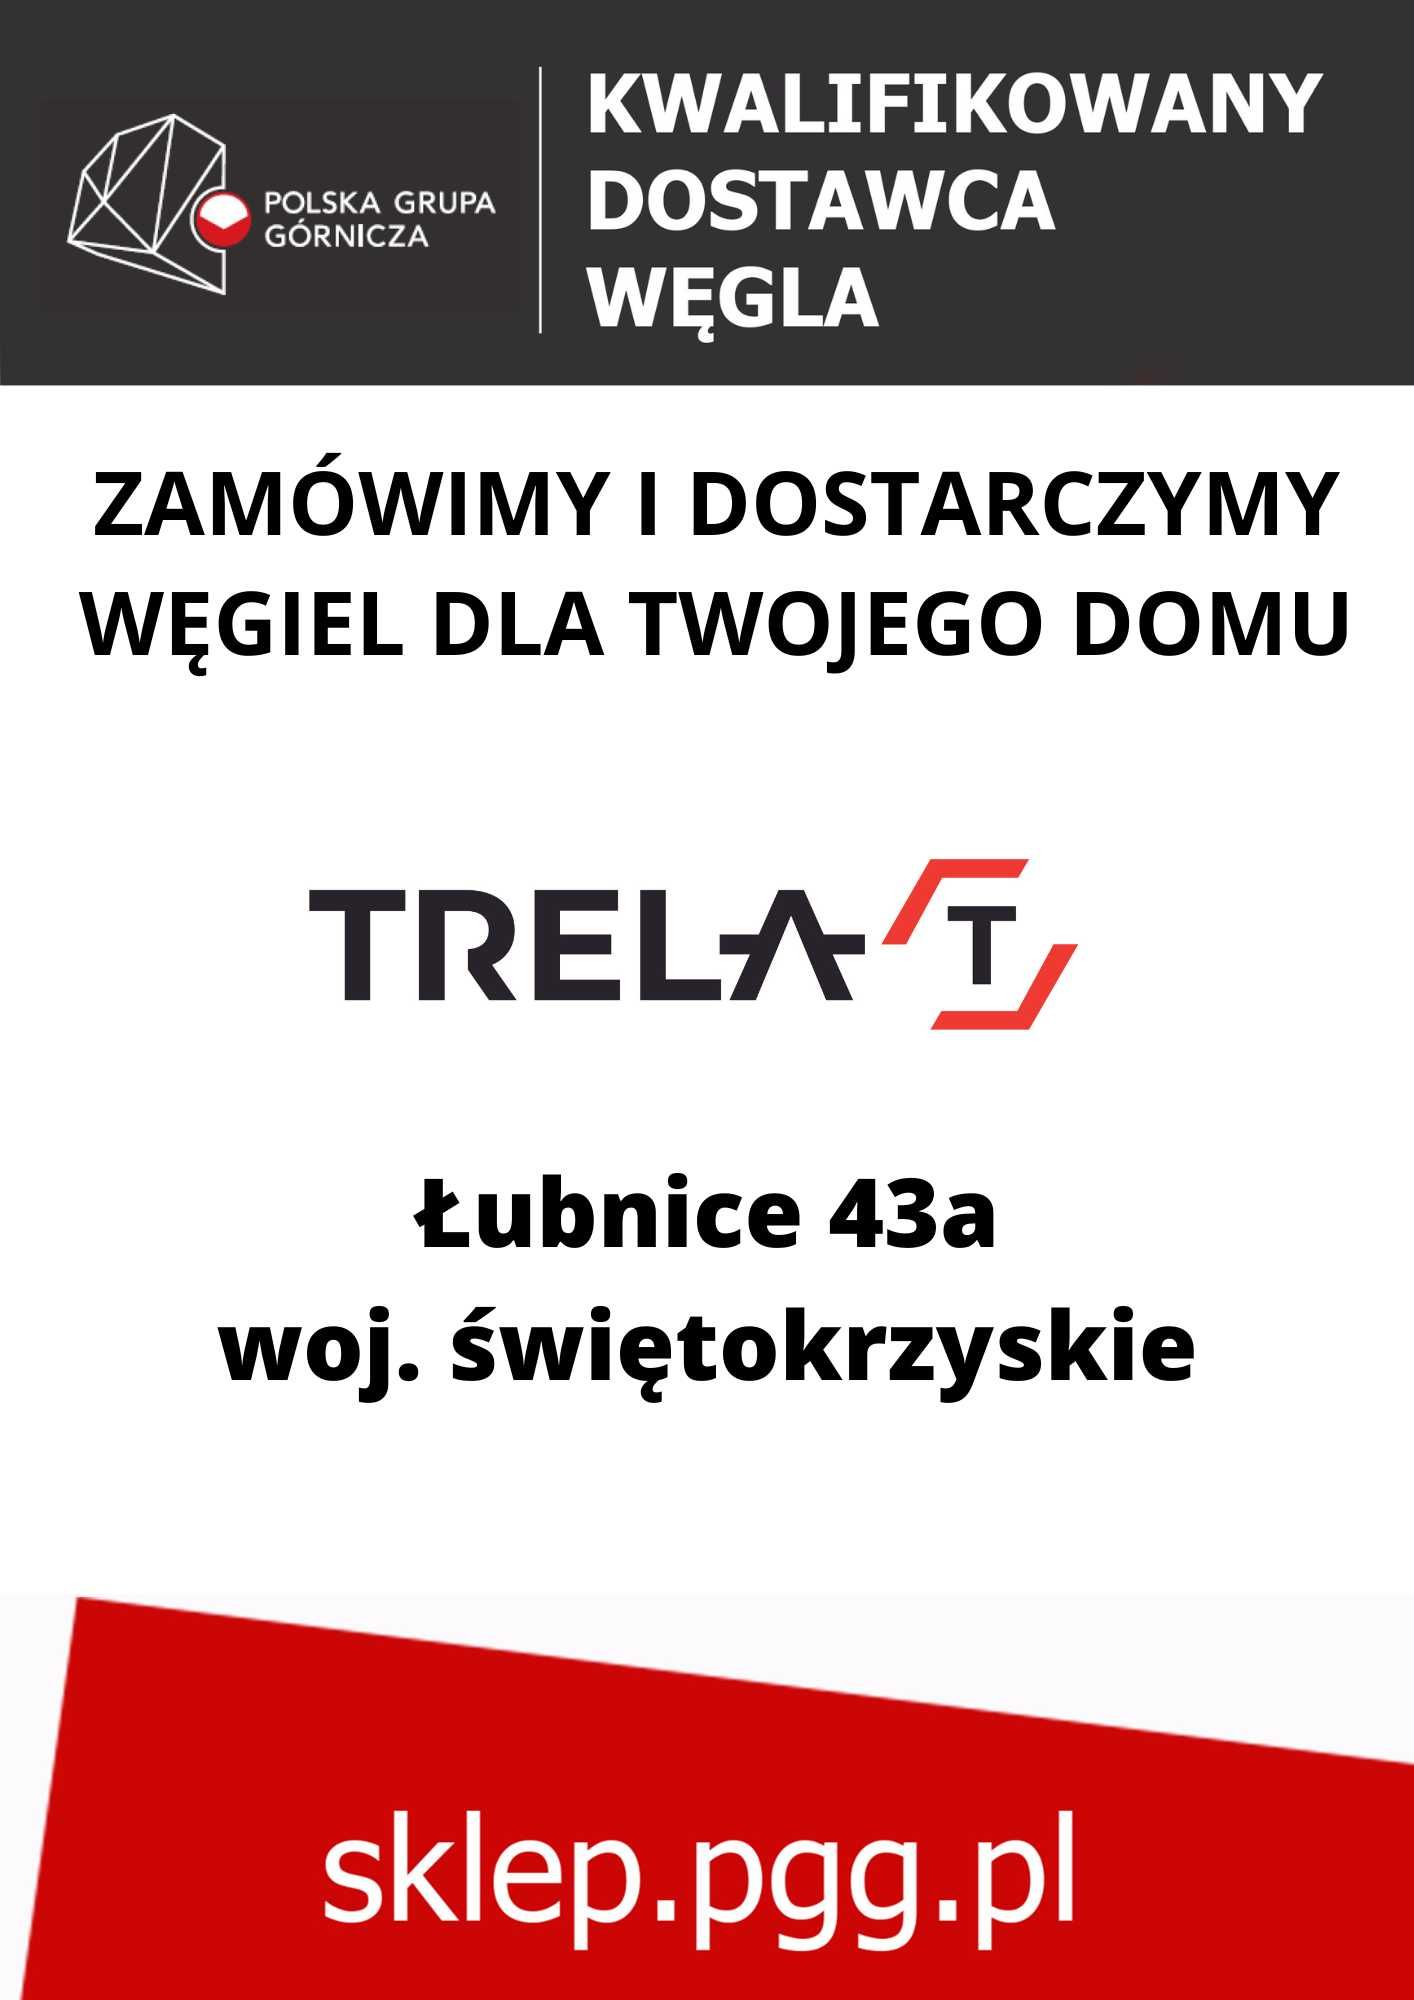 Węgiel ORZECH: Mysłowice-Wesoła/Piast/Ziemowit/Staszic-Wujek i inne